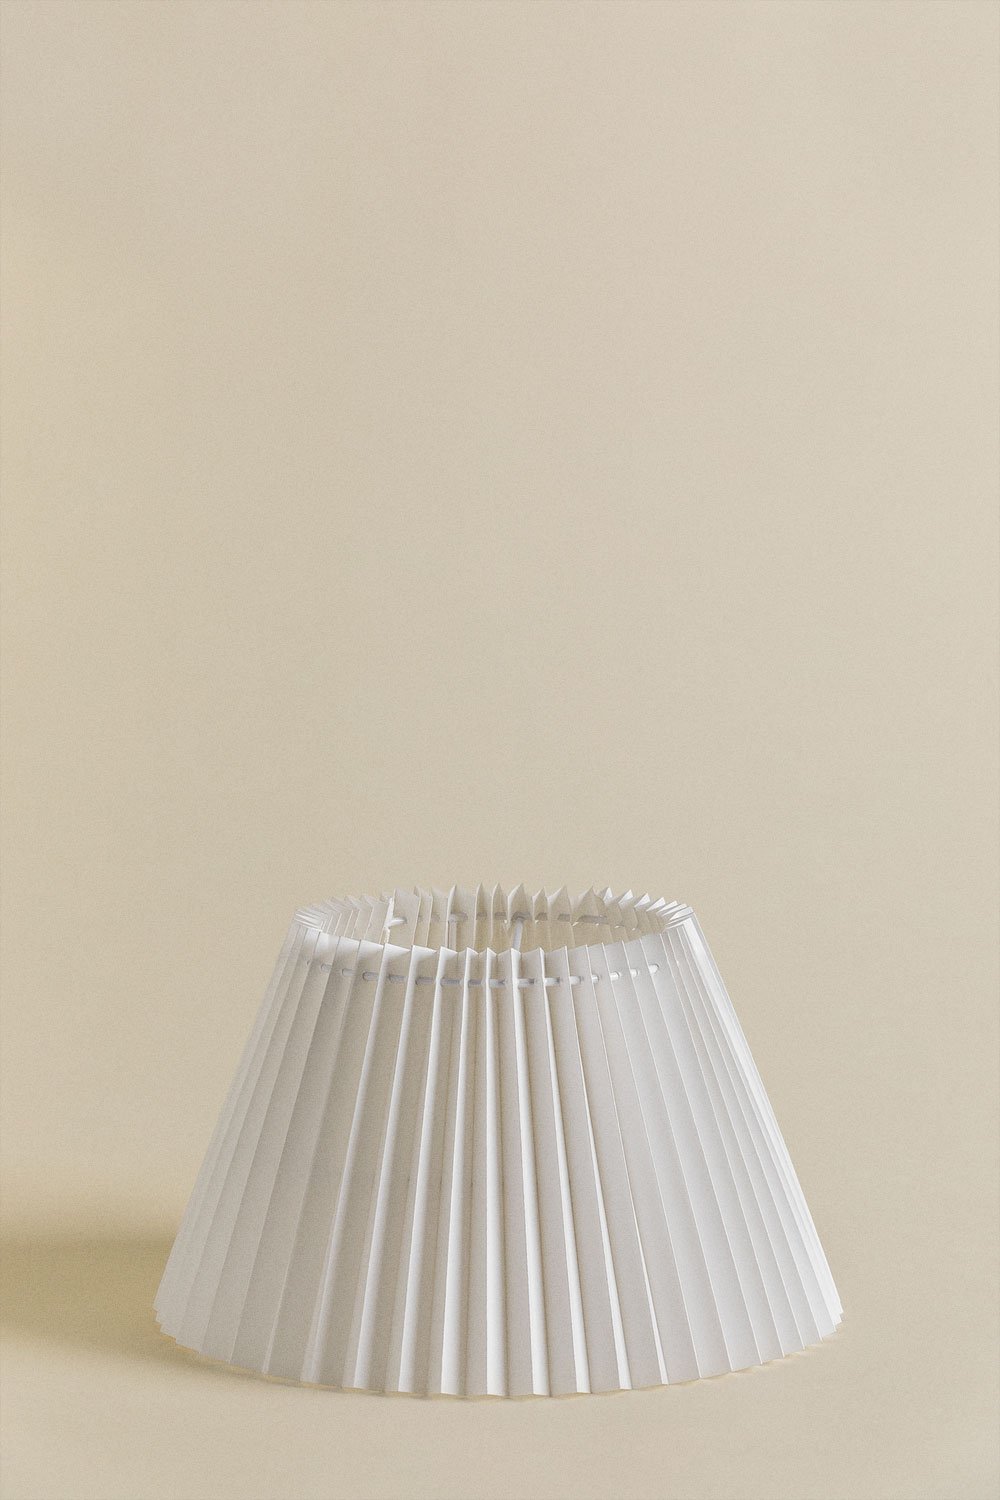 Oguran rijstpapier lampenkap , galerij beeld 1